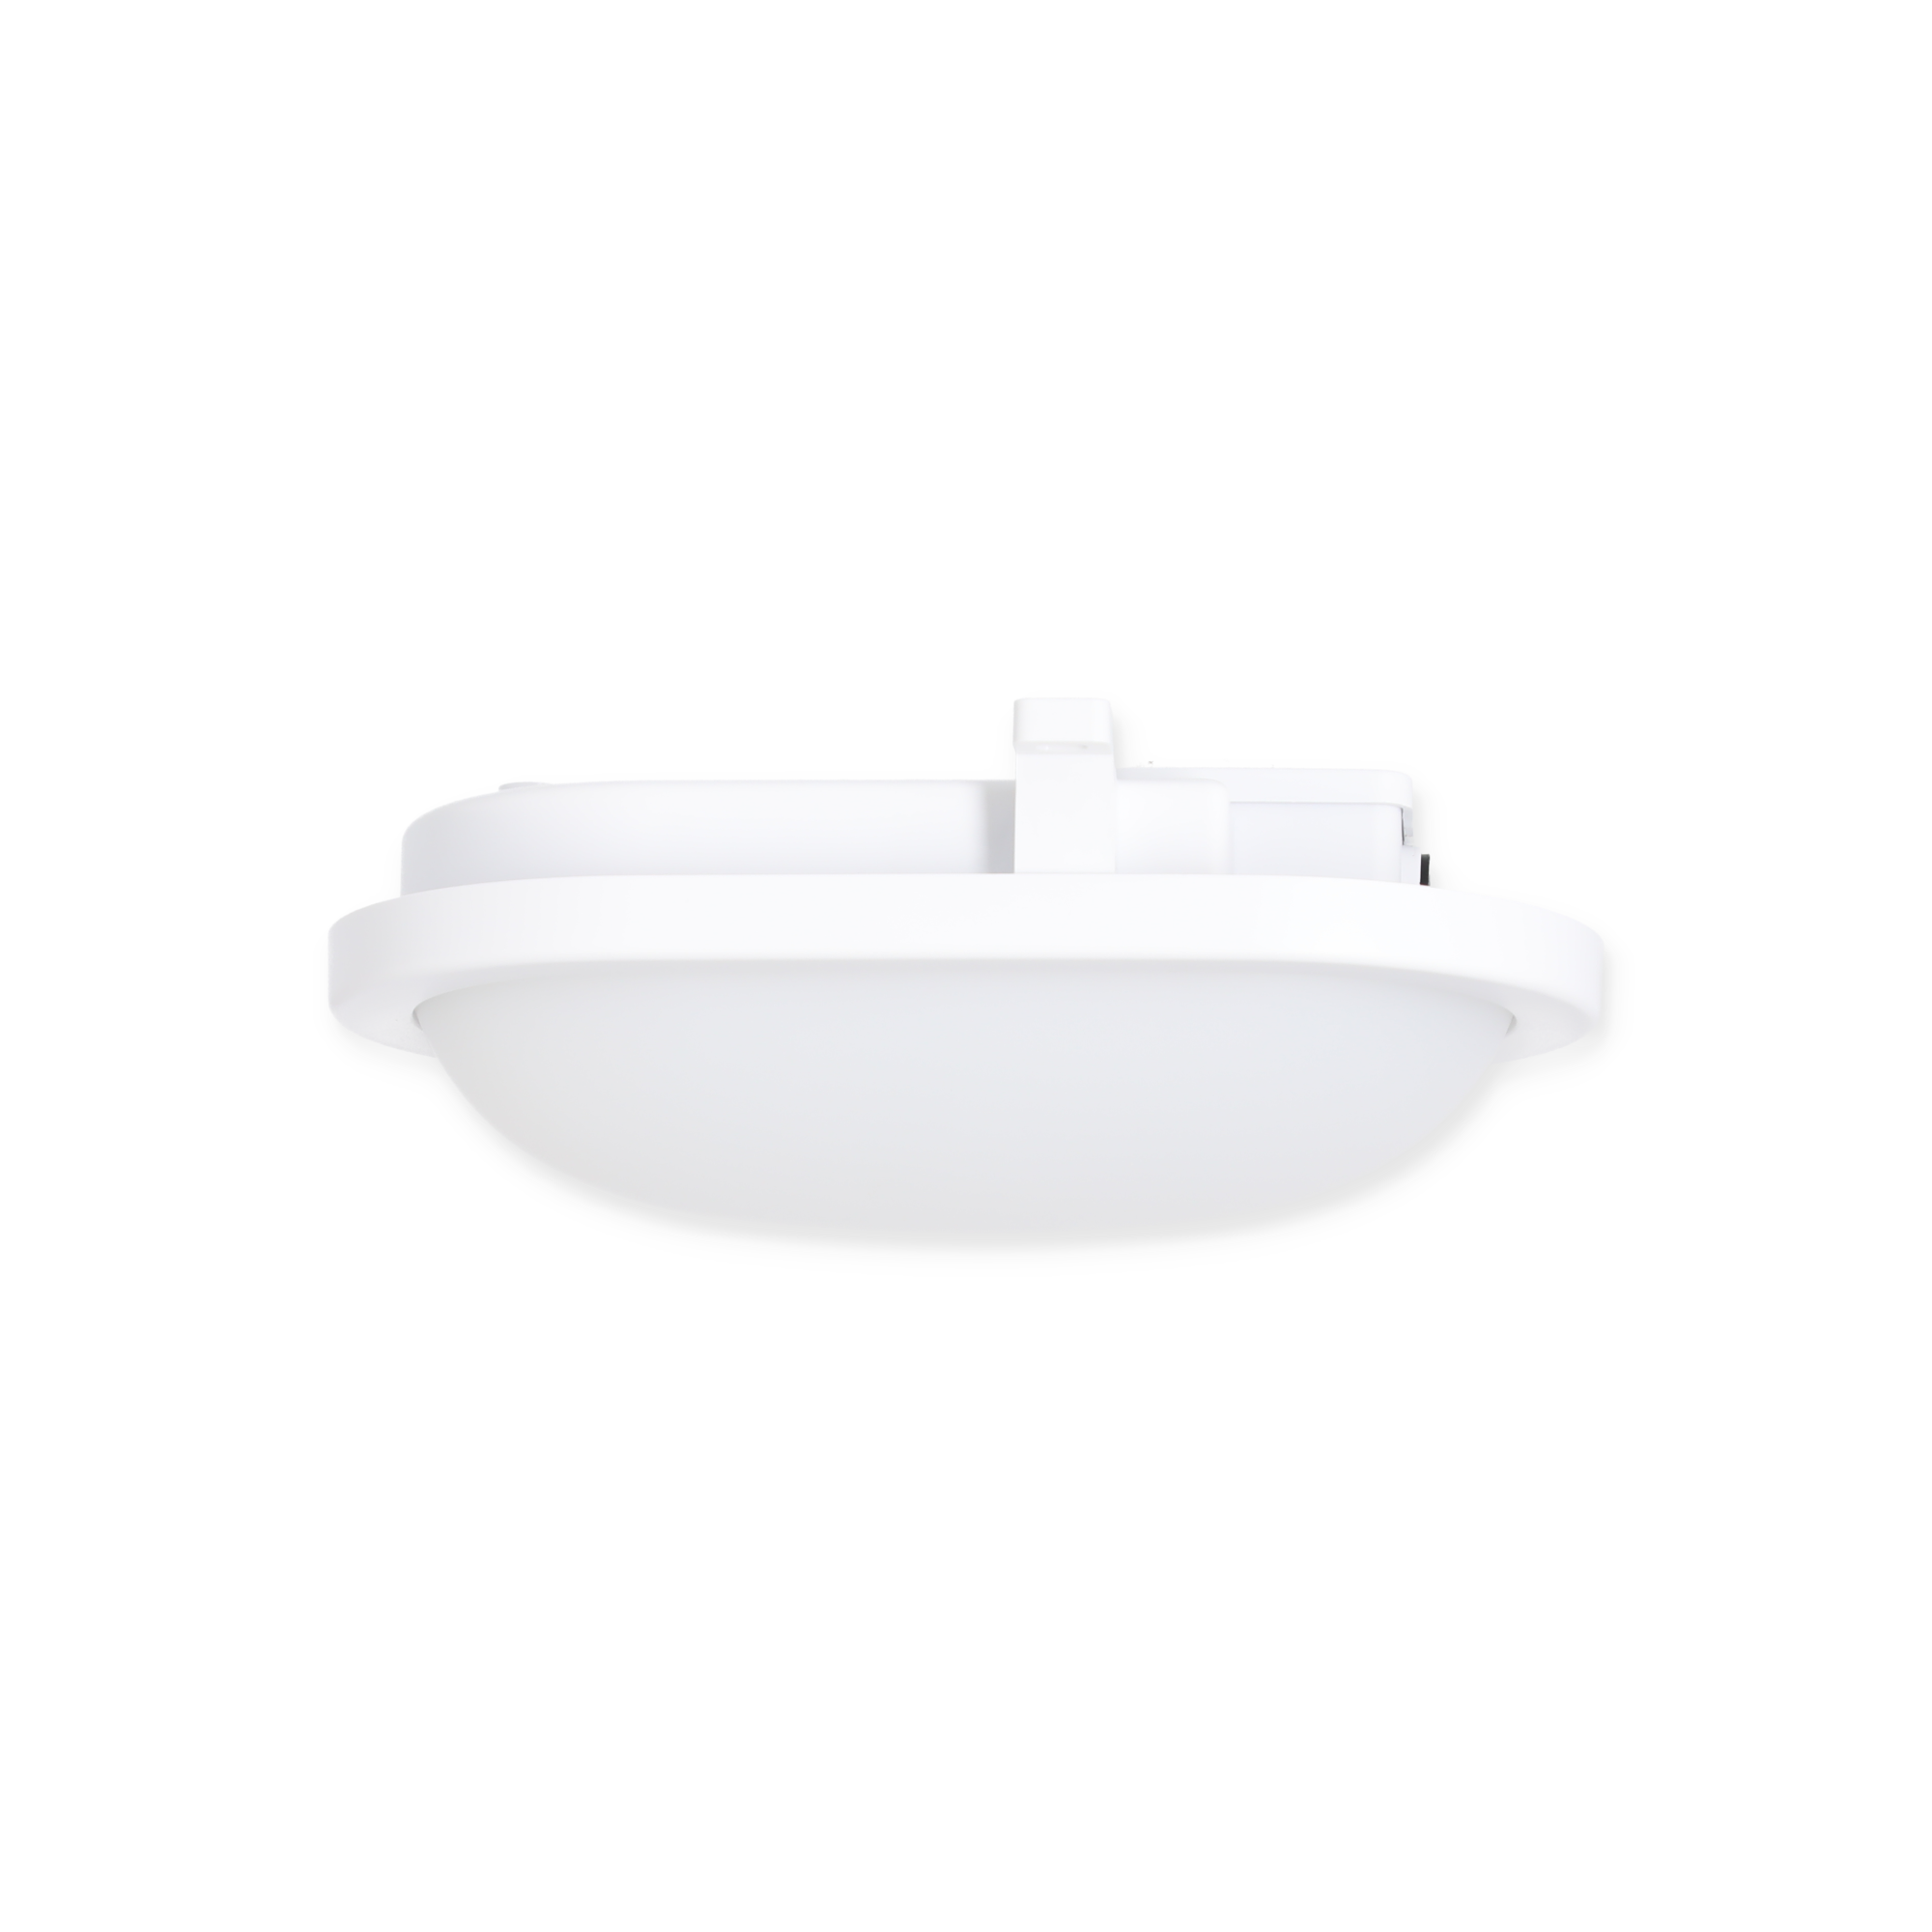 LED-Außenleuchte mit Bewegungsmelder weiß 18 W 1500 lm 21,8 x 14,6 cm + product picture